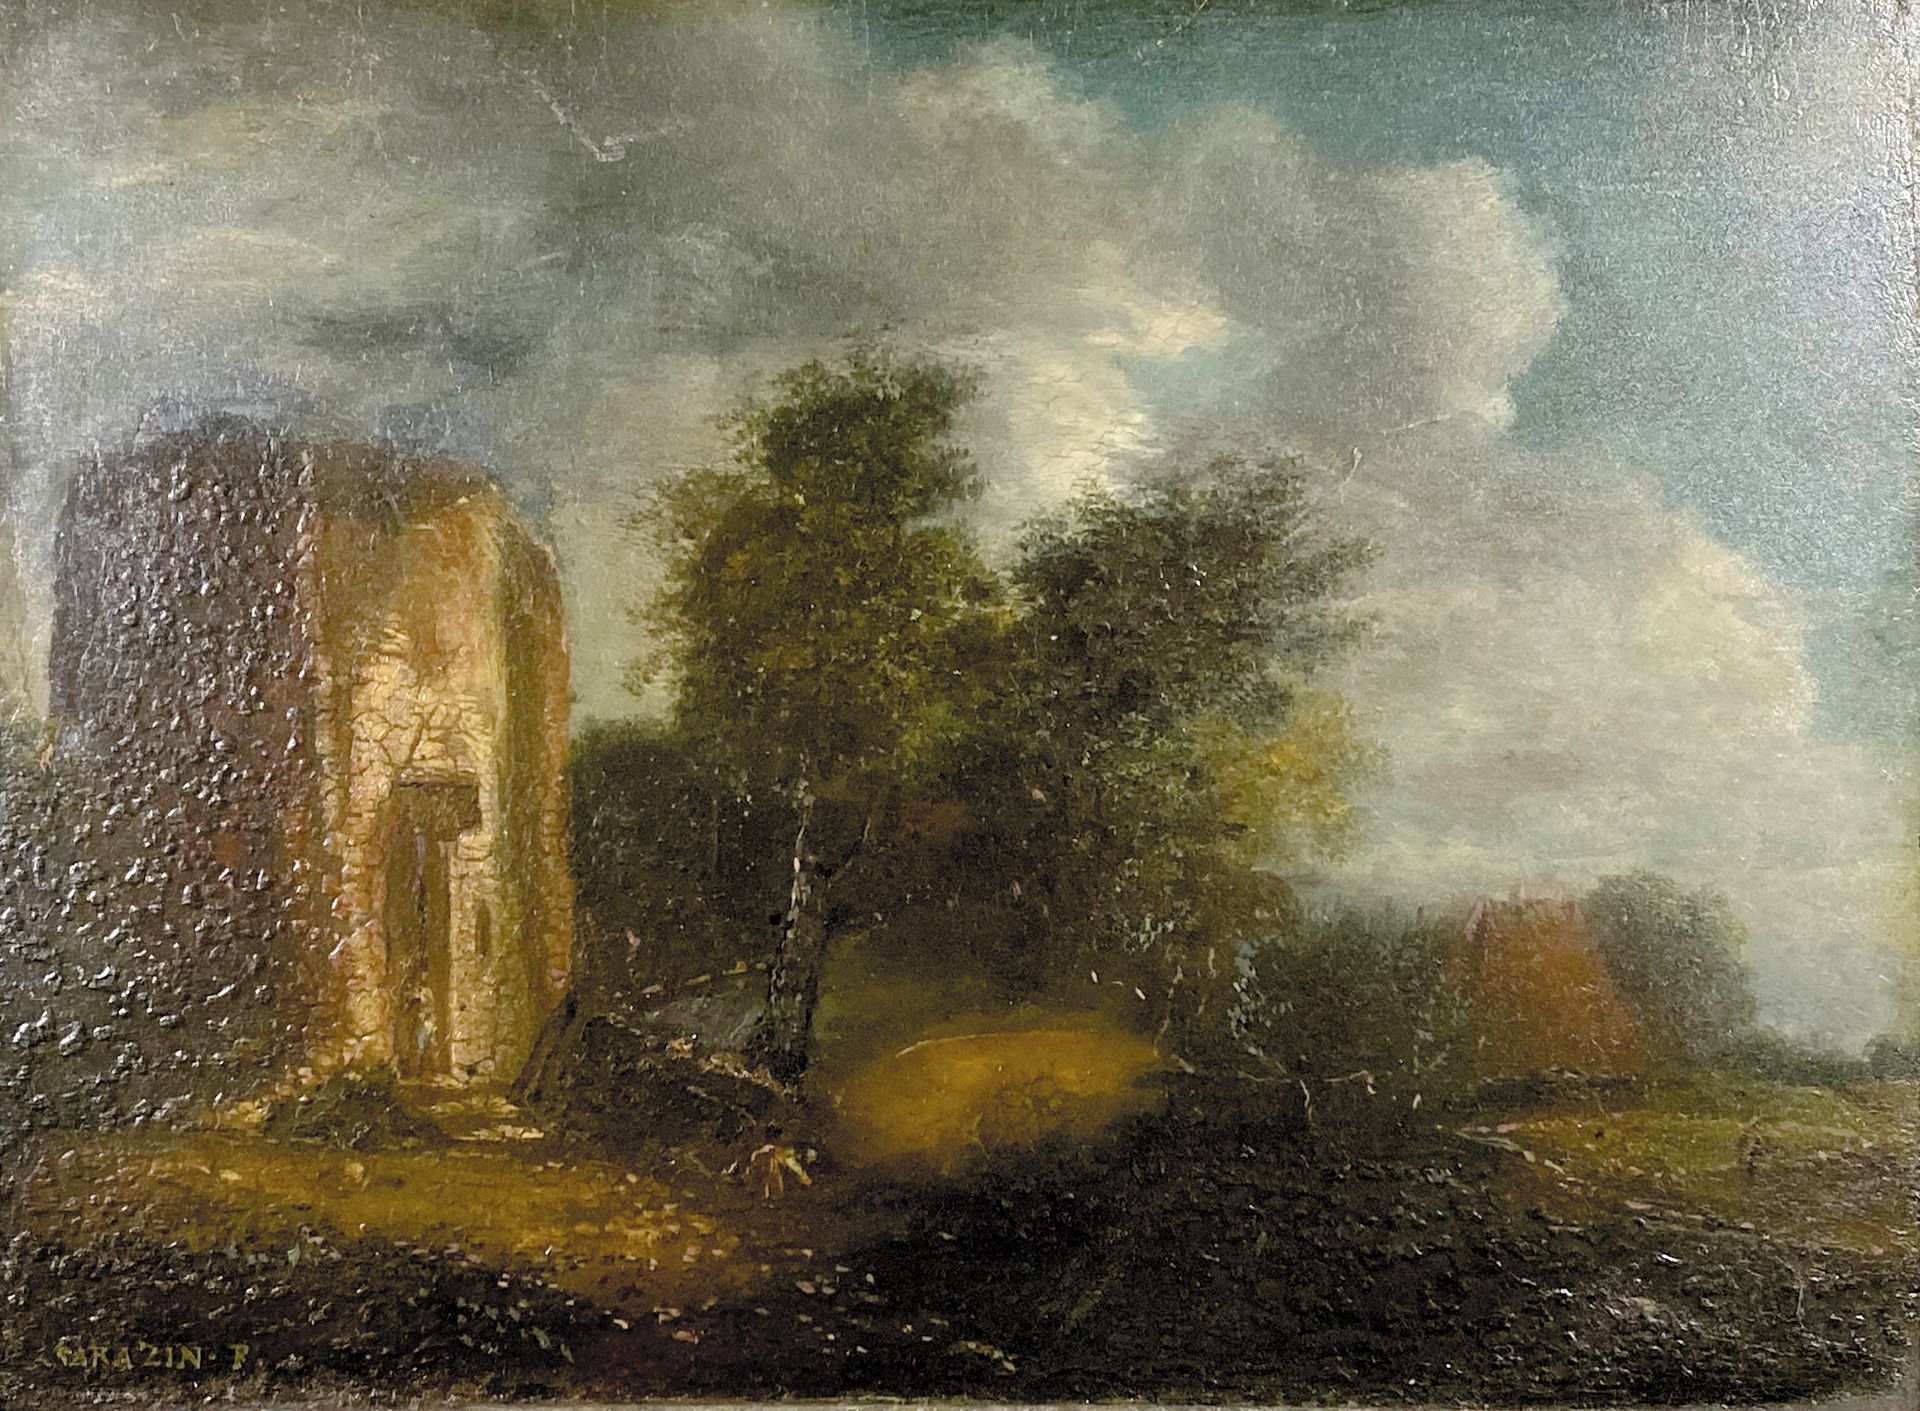 Null Jean-Baptiste SARAZIN (XVIII-XIX secolo)

Paesaggio con torre in rovina. 

&hellip;